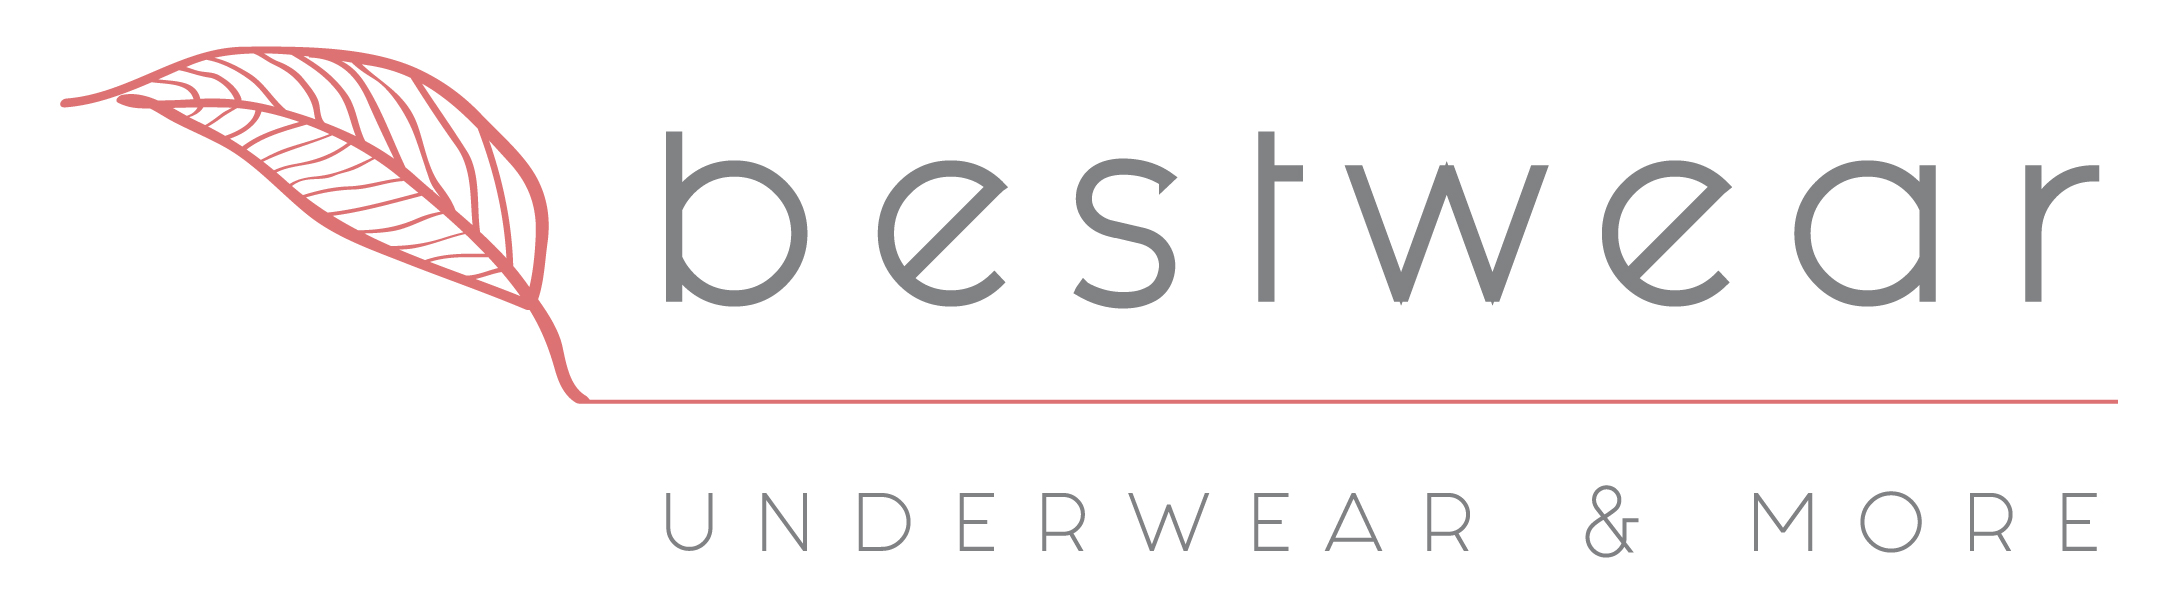 bestwear logo 27.06.18